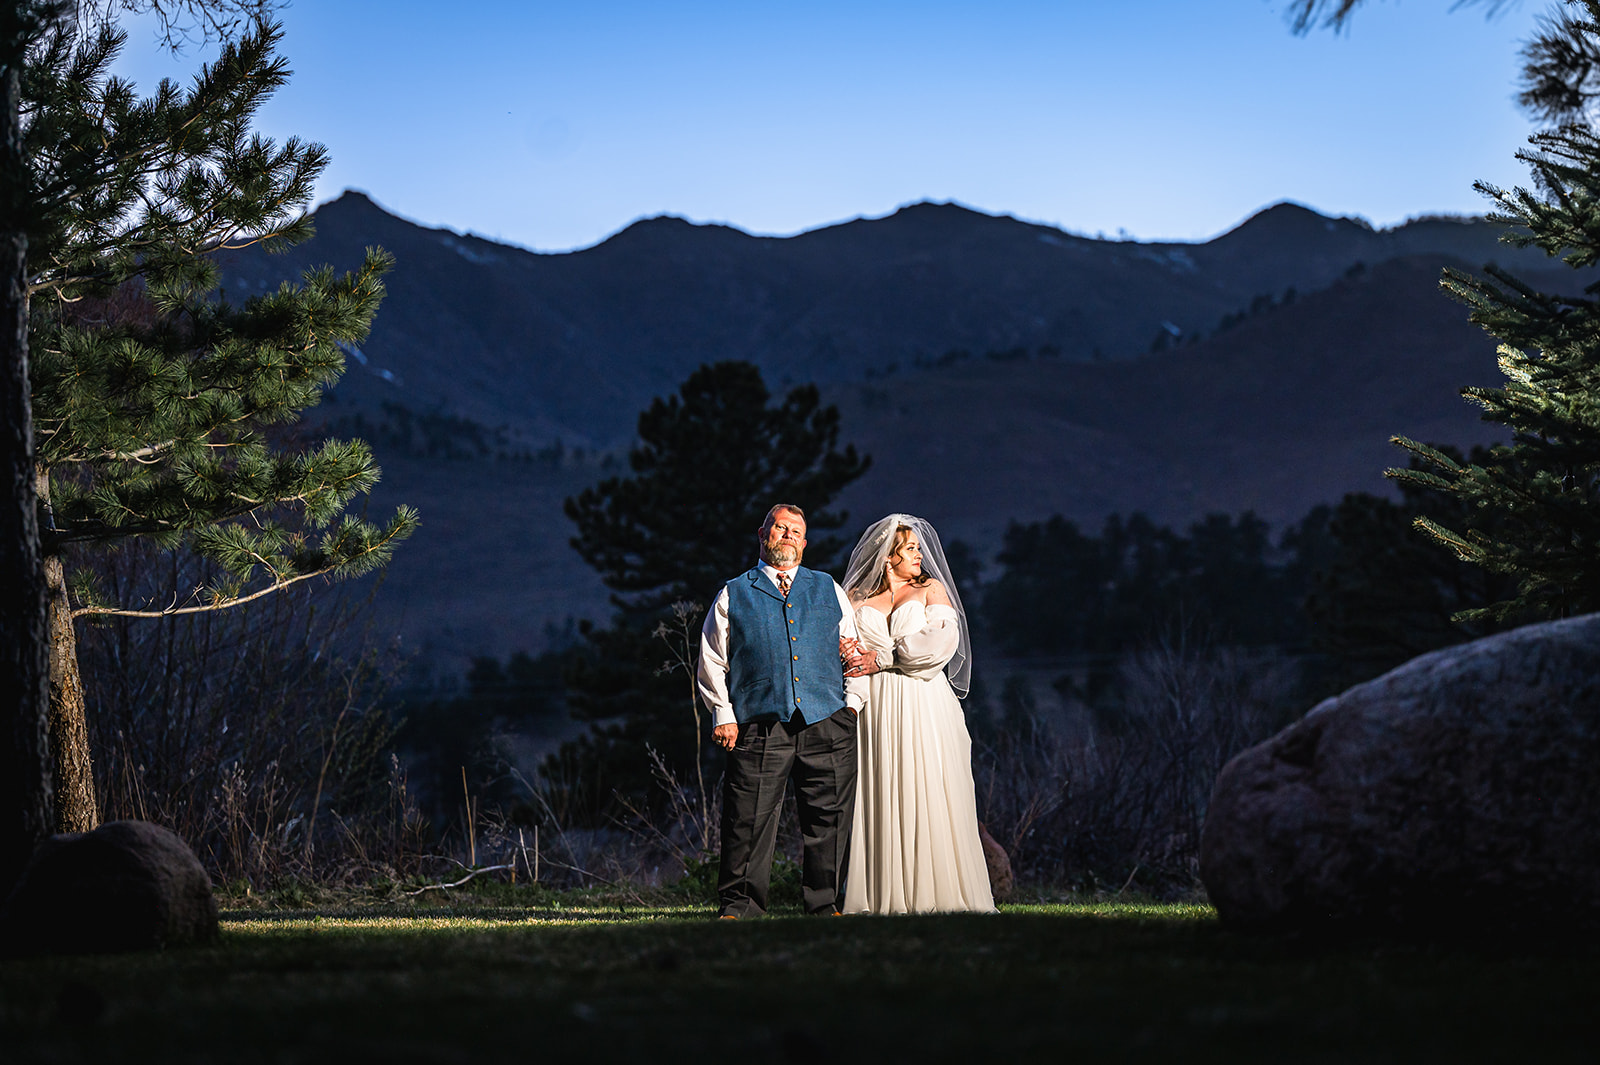 bride and groom grass rocks mountain blue hour wedding couple photography denver colorado 